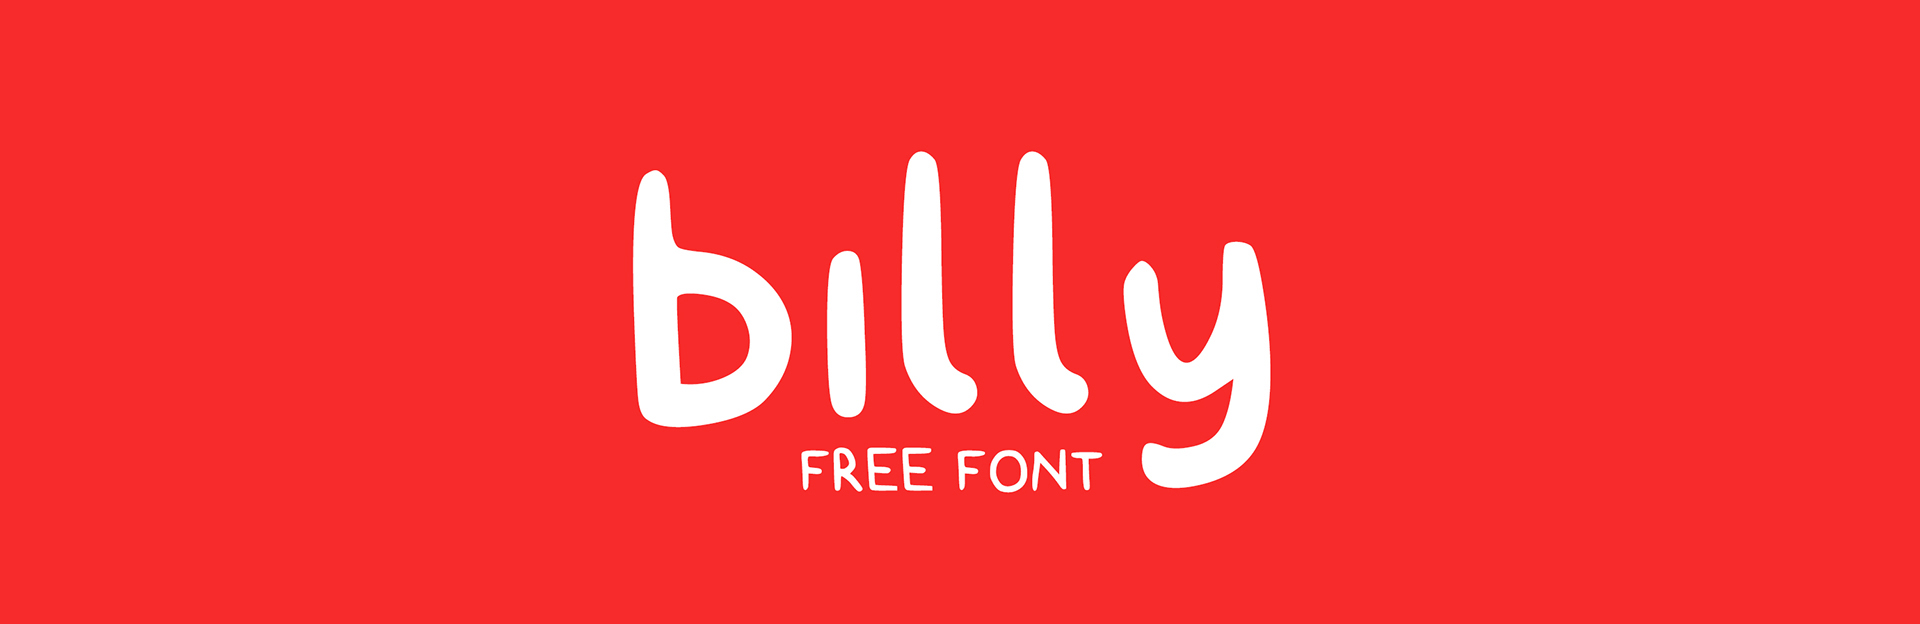 billy Free Font - script